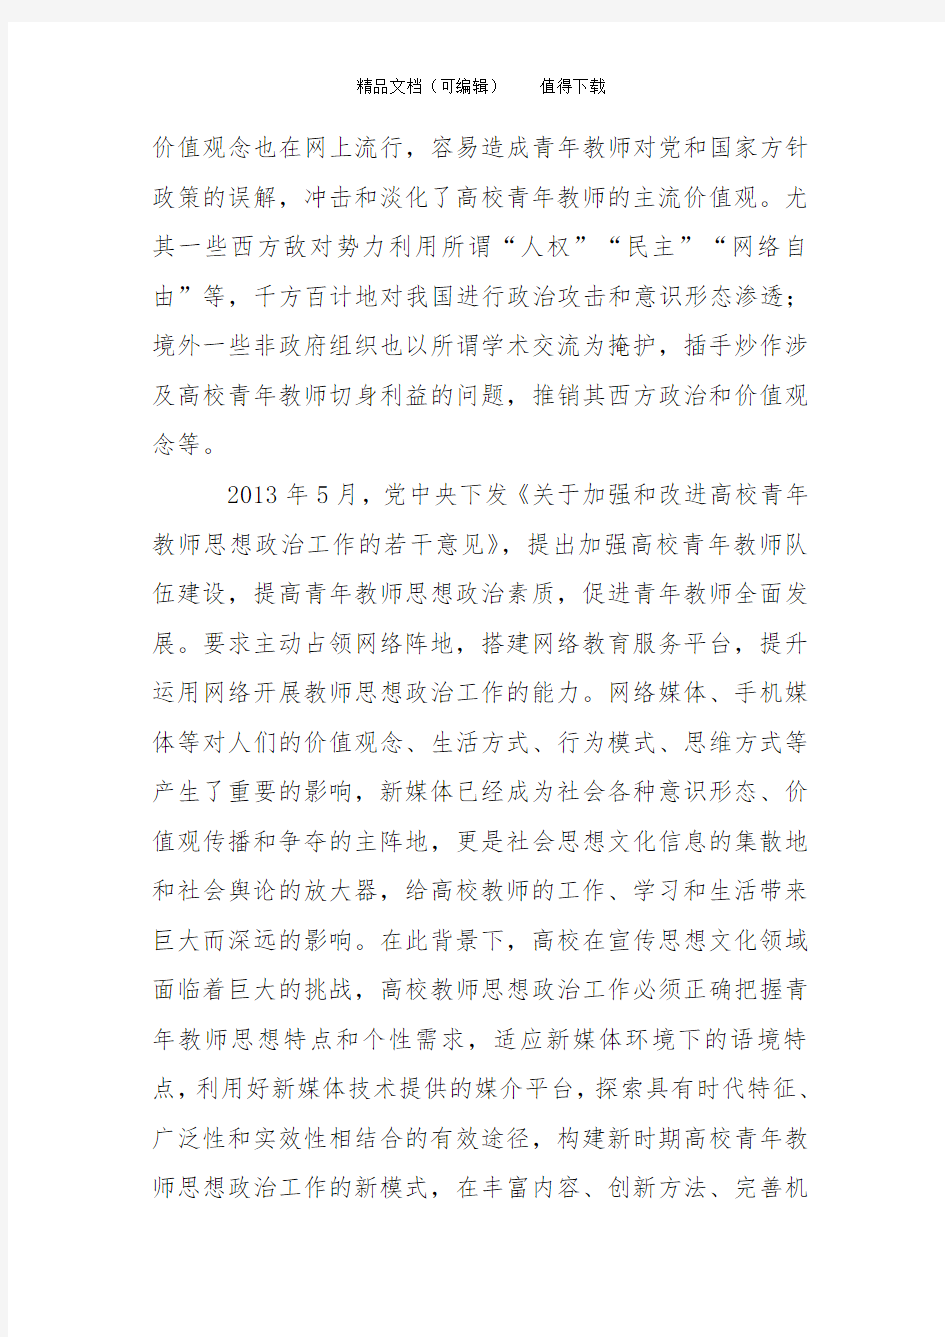 北京高校青年教师使用新媒体状况调查研究